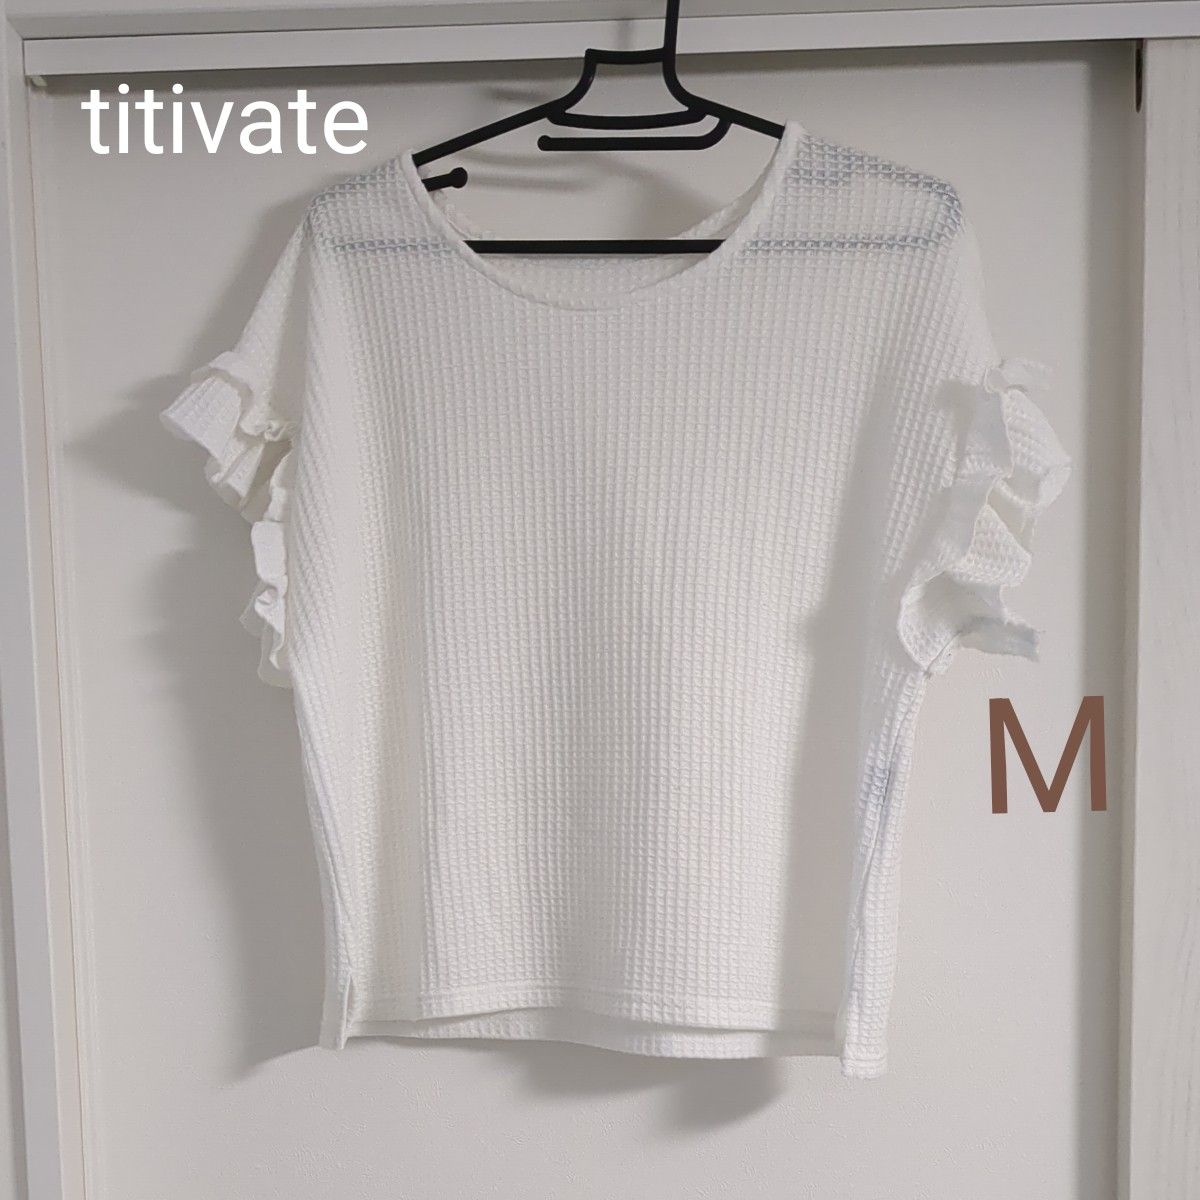 titivate 袖フリル ワッフルTシャツ 半袖 白 ホワイトレディース Mサイズ トップス